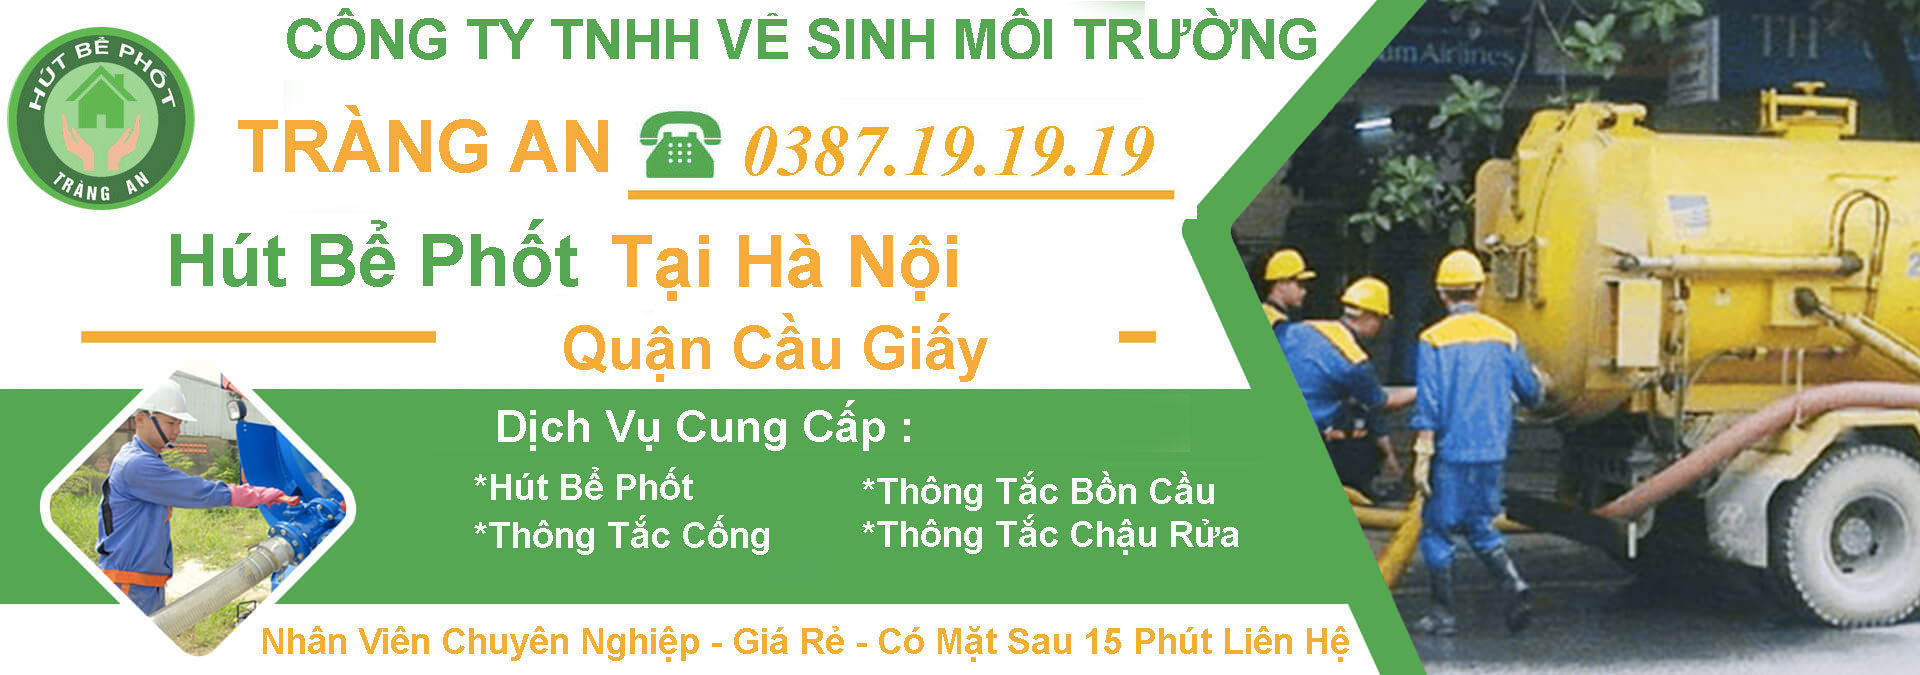 Thong Tac Cong Ha Noi Cau Giay